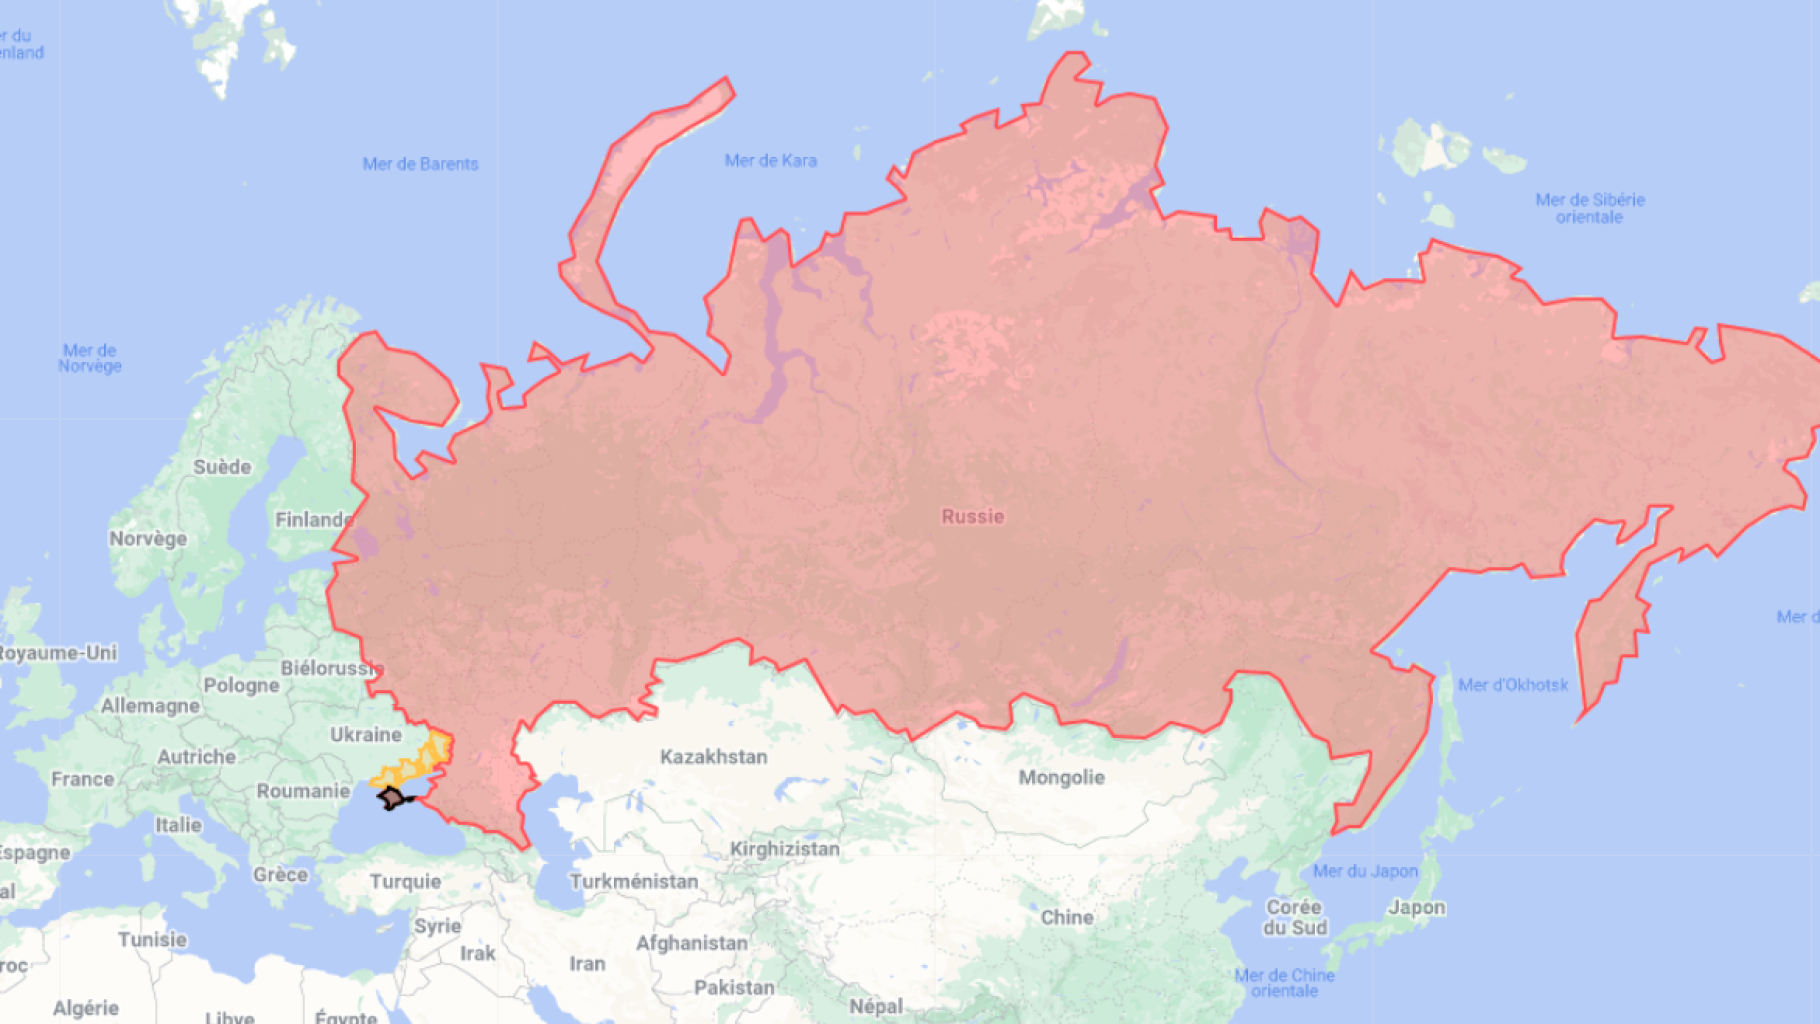 Poutine annexe illégalement des territoires en Ukraine, malgré l'opposition mondiale